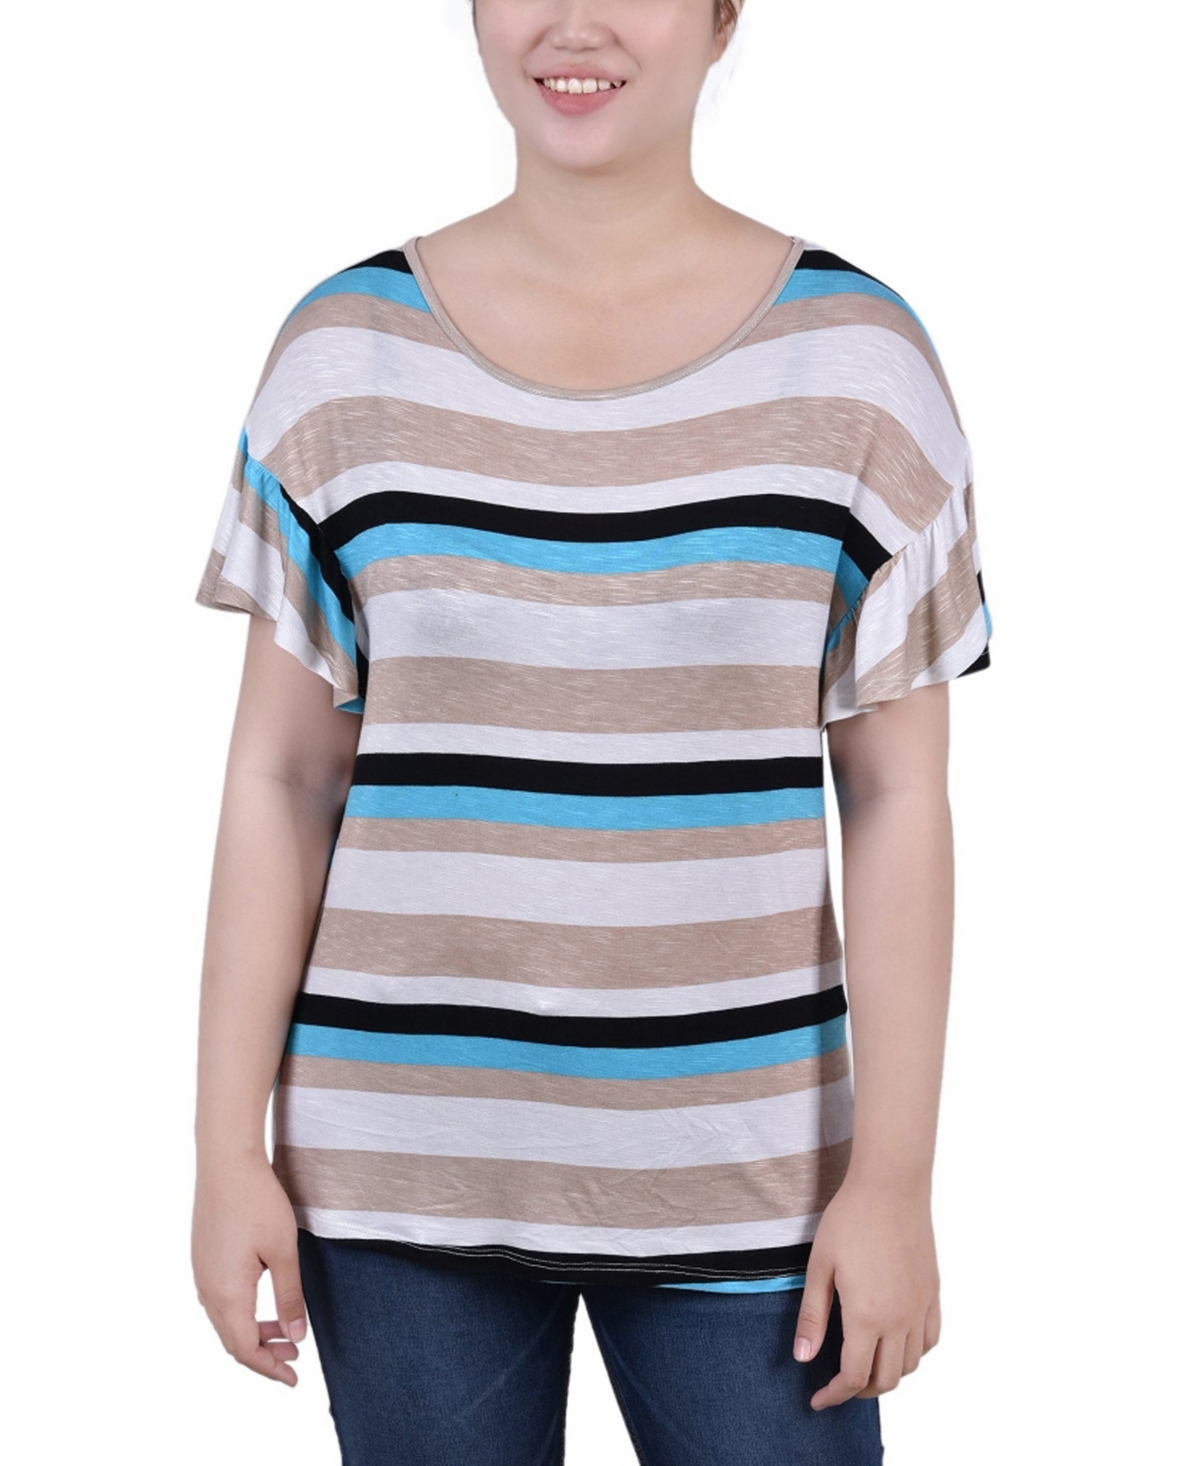 Women's Short Flutter Sleeve Top - Turquoise Multi Stripe